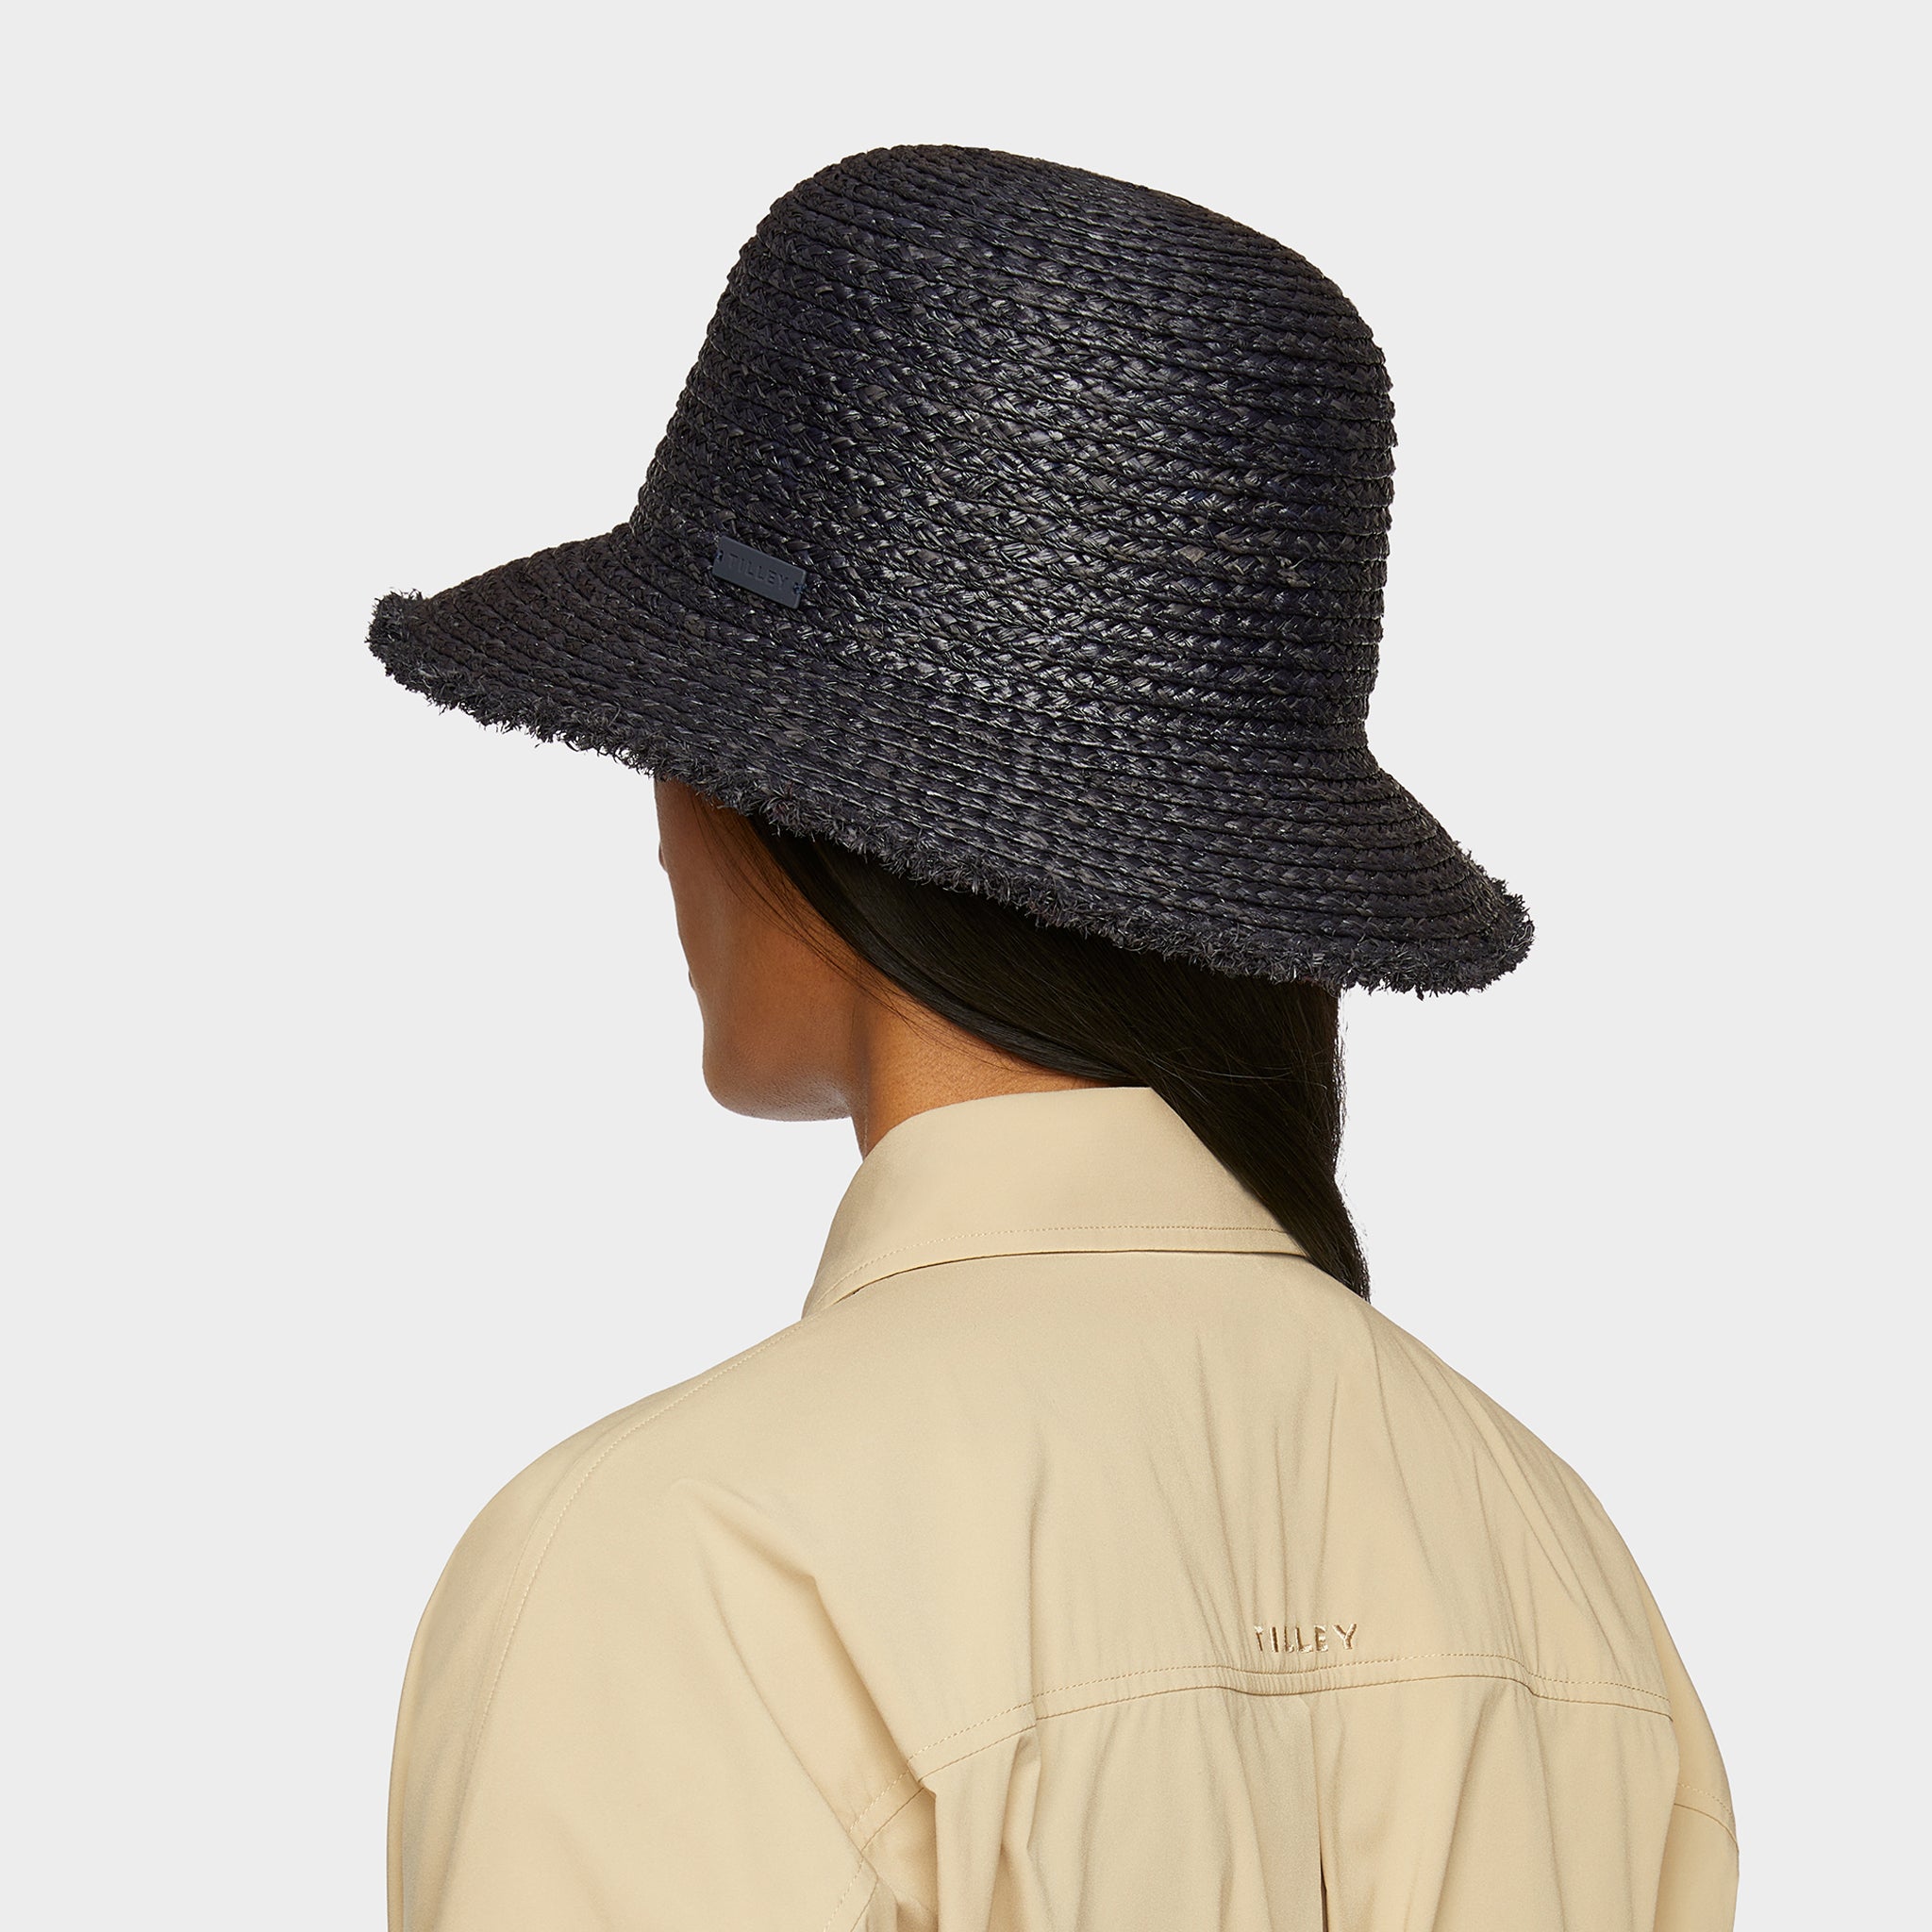 Tilley Raffia Wide Brimmed Hat S/M / Natural